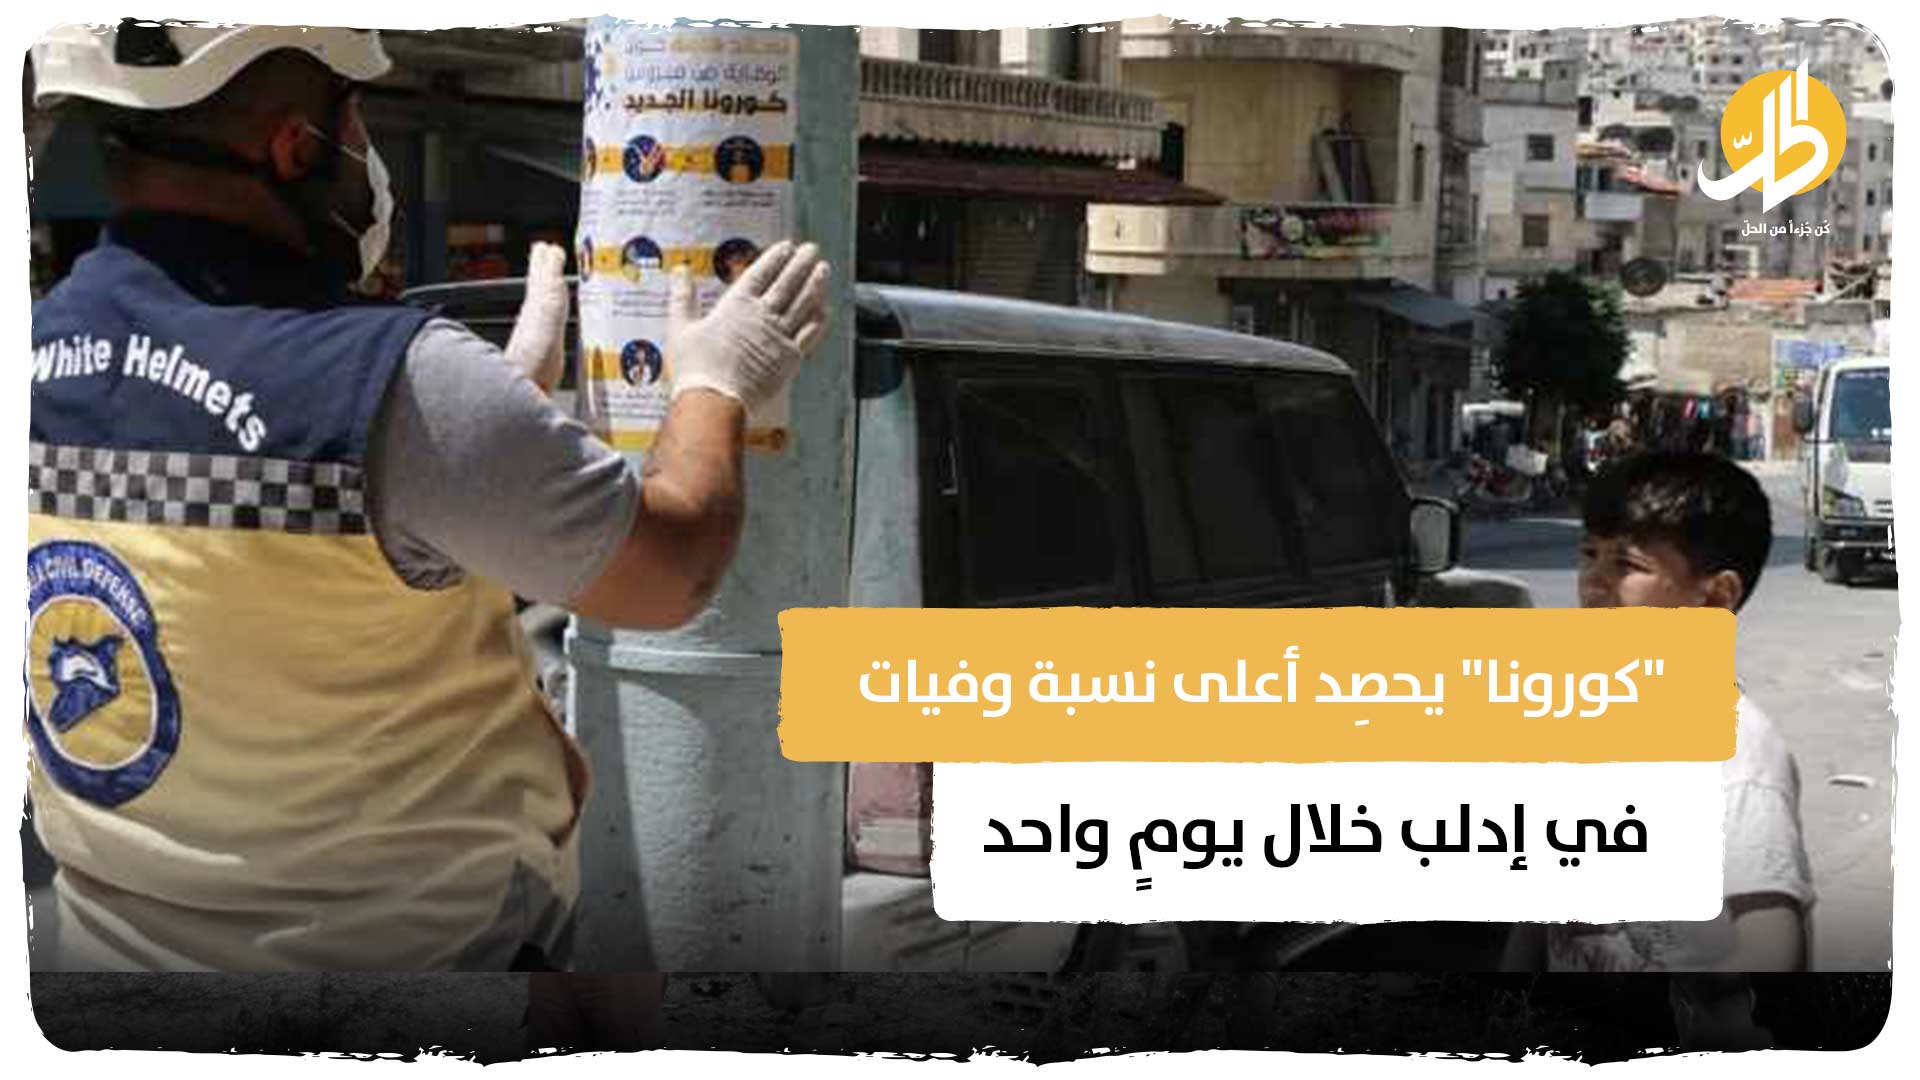 “كورونا” يحصِد أعلى نسبة وفيات في إدلب خلال يومٍ واحد